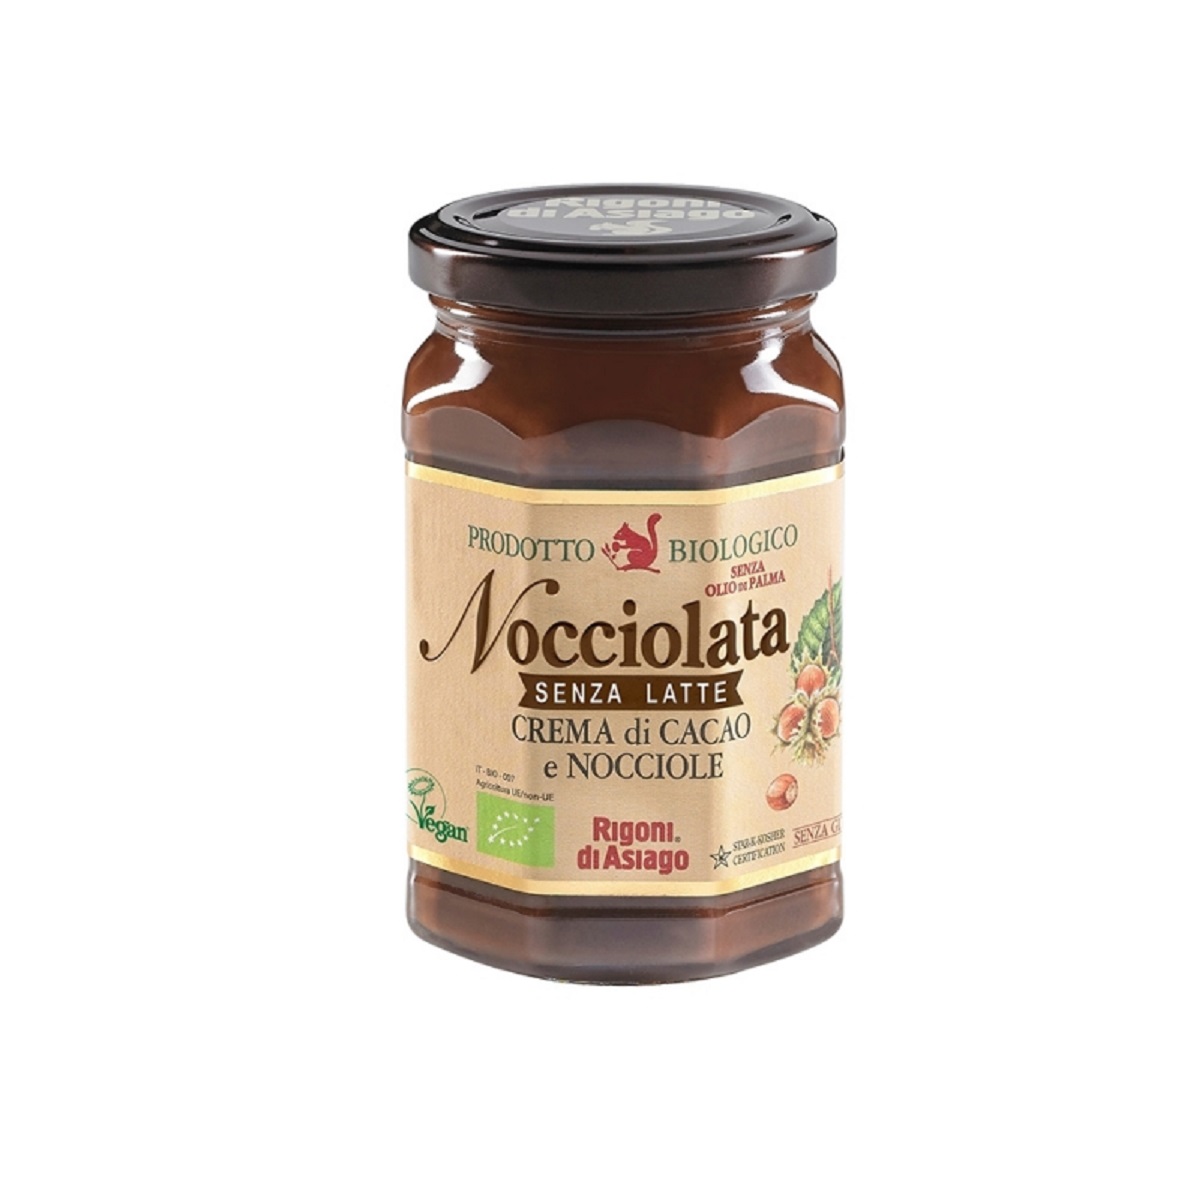 Rigoni di Asiago Nocciolata Organic Hazelnut & Cocoa spread Cream GF DF 275g